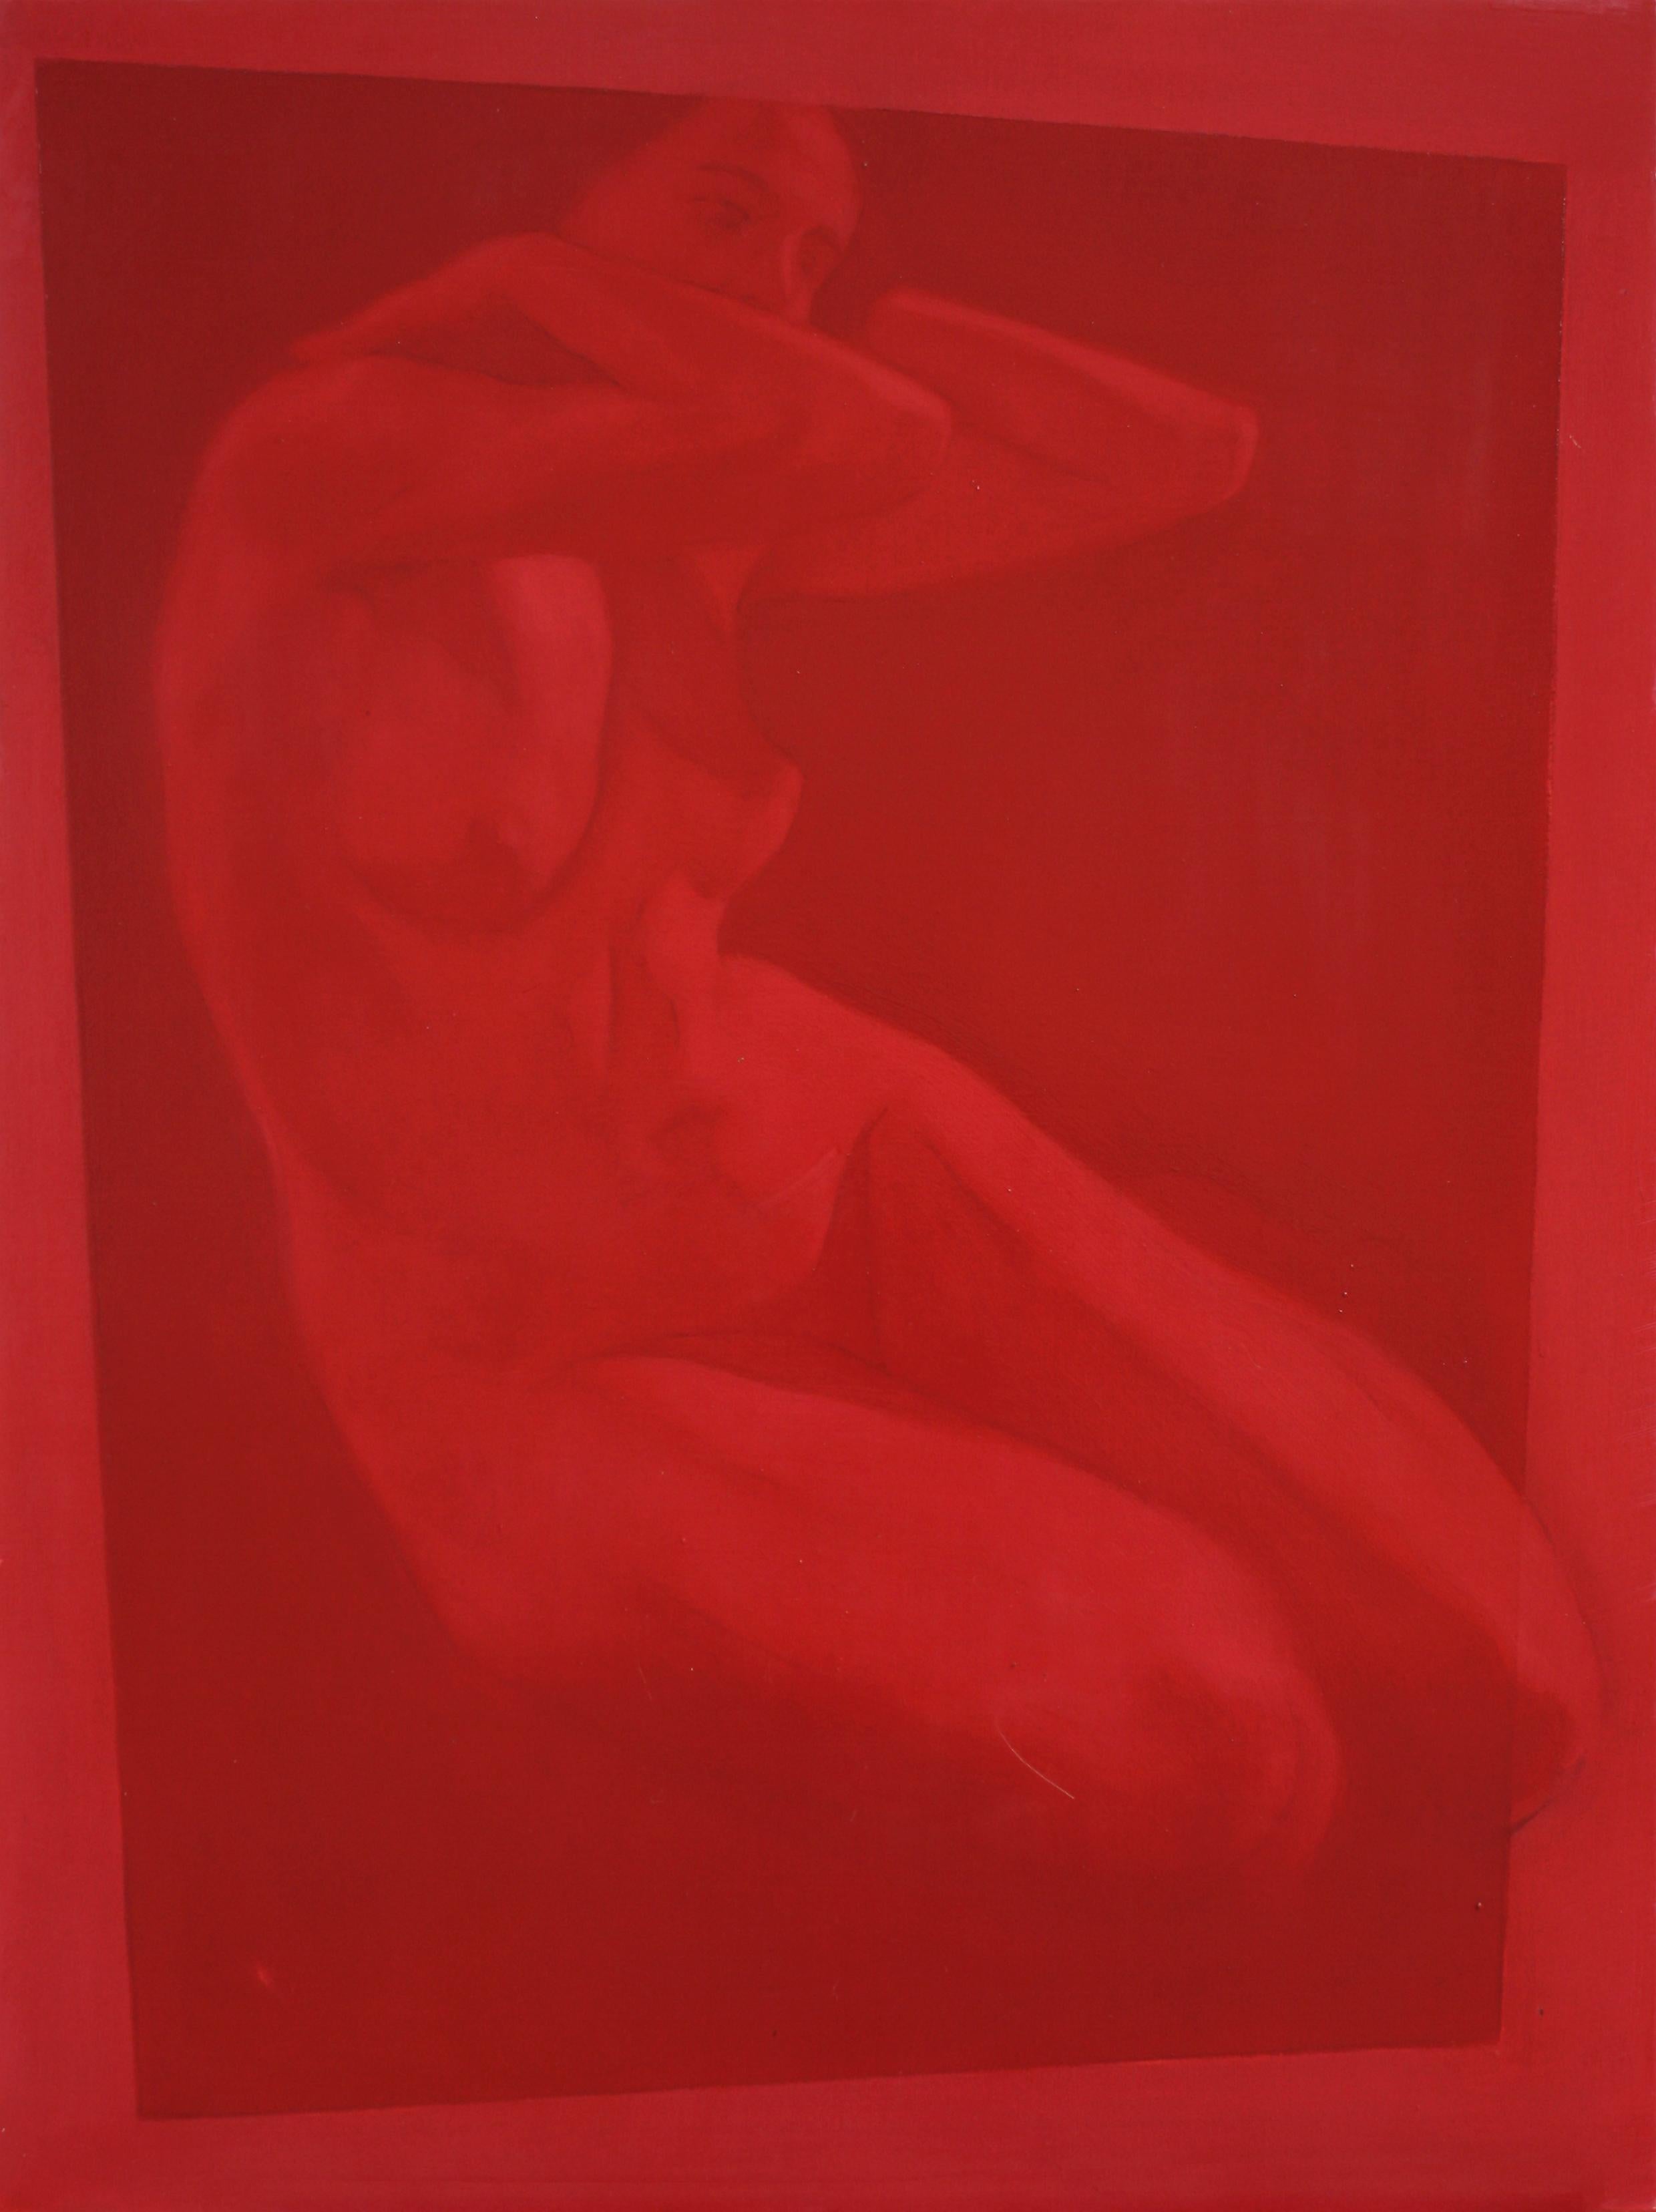 Portrait de femme nue élégante en rouge à l'huile sur toile du peintre italien contemporain - Art de Simone Geraci